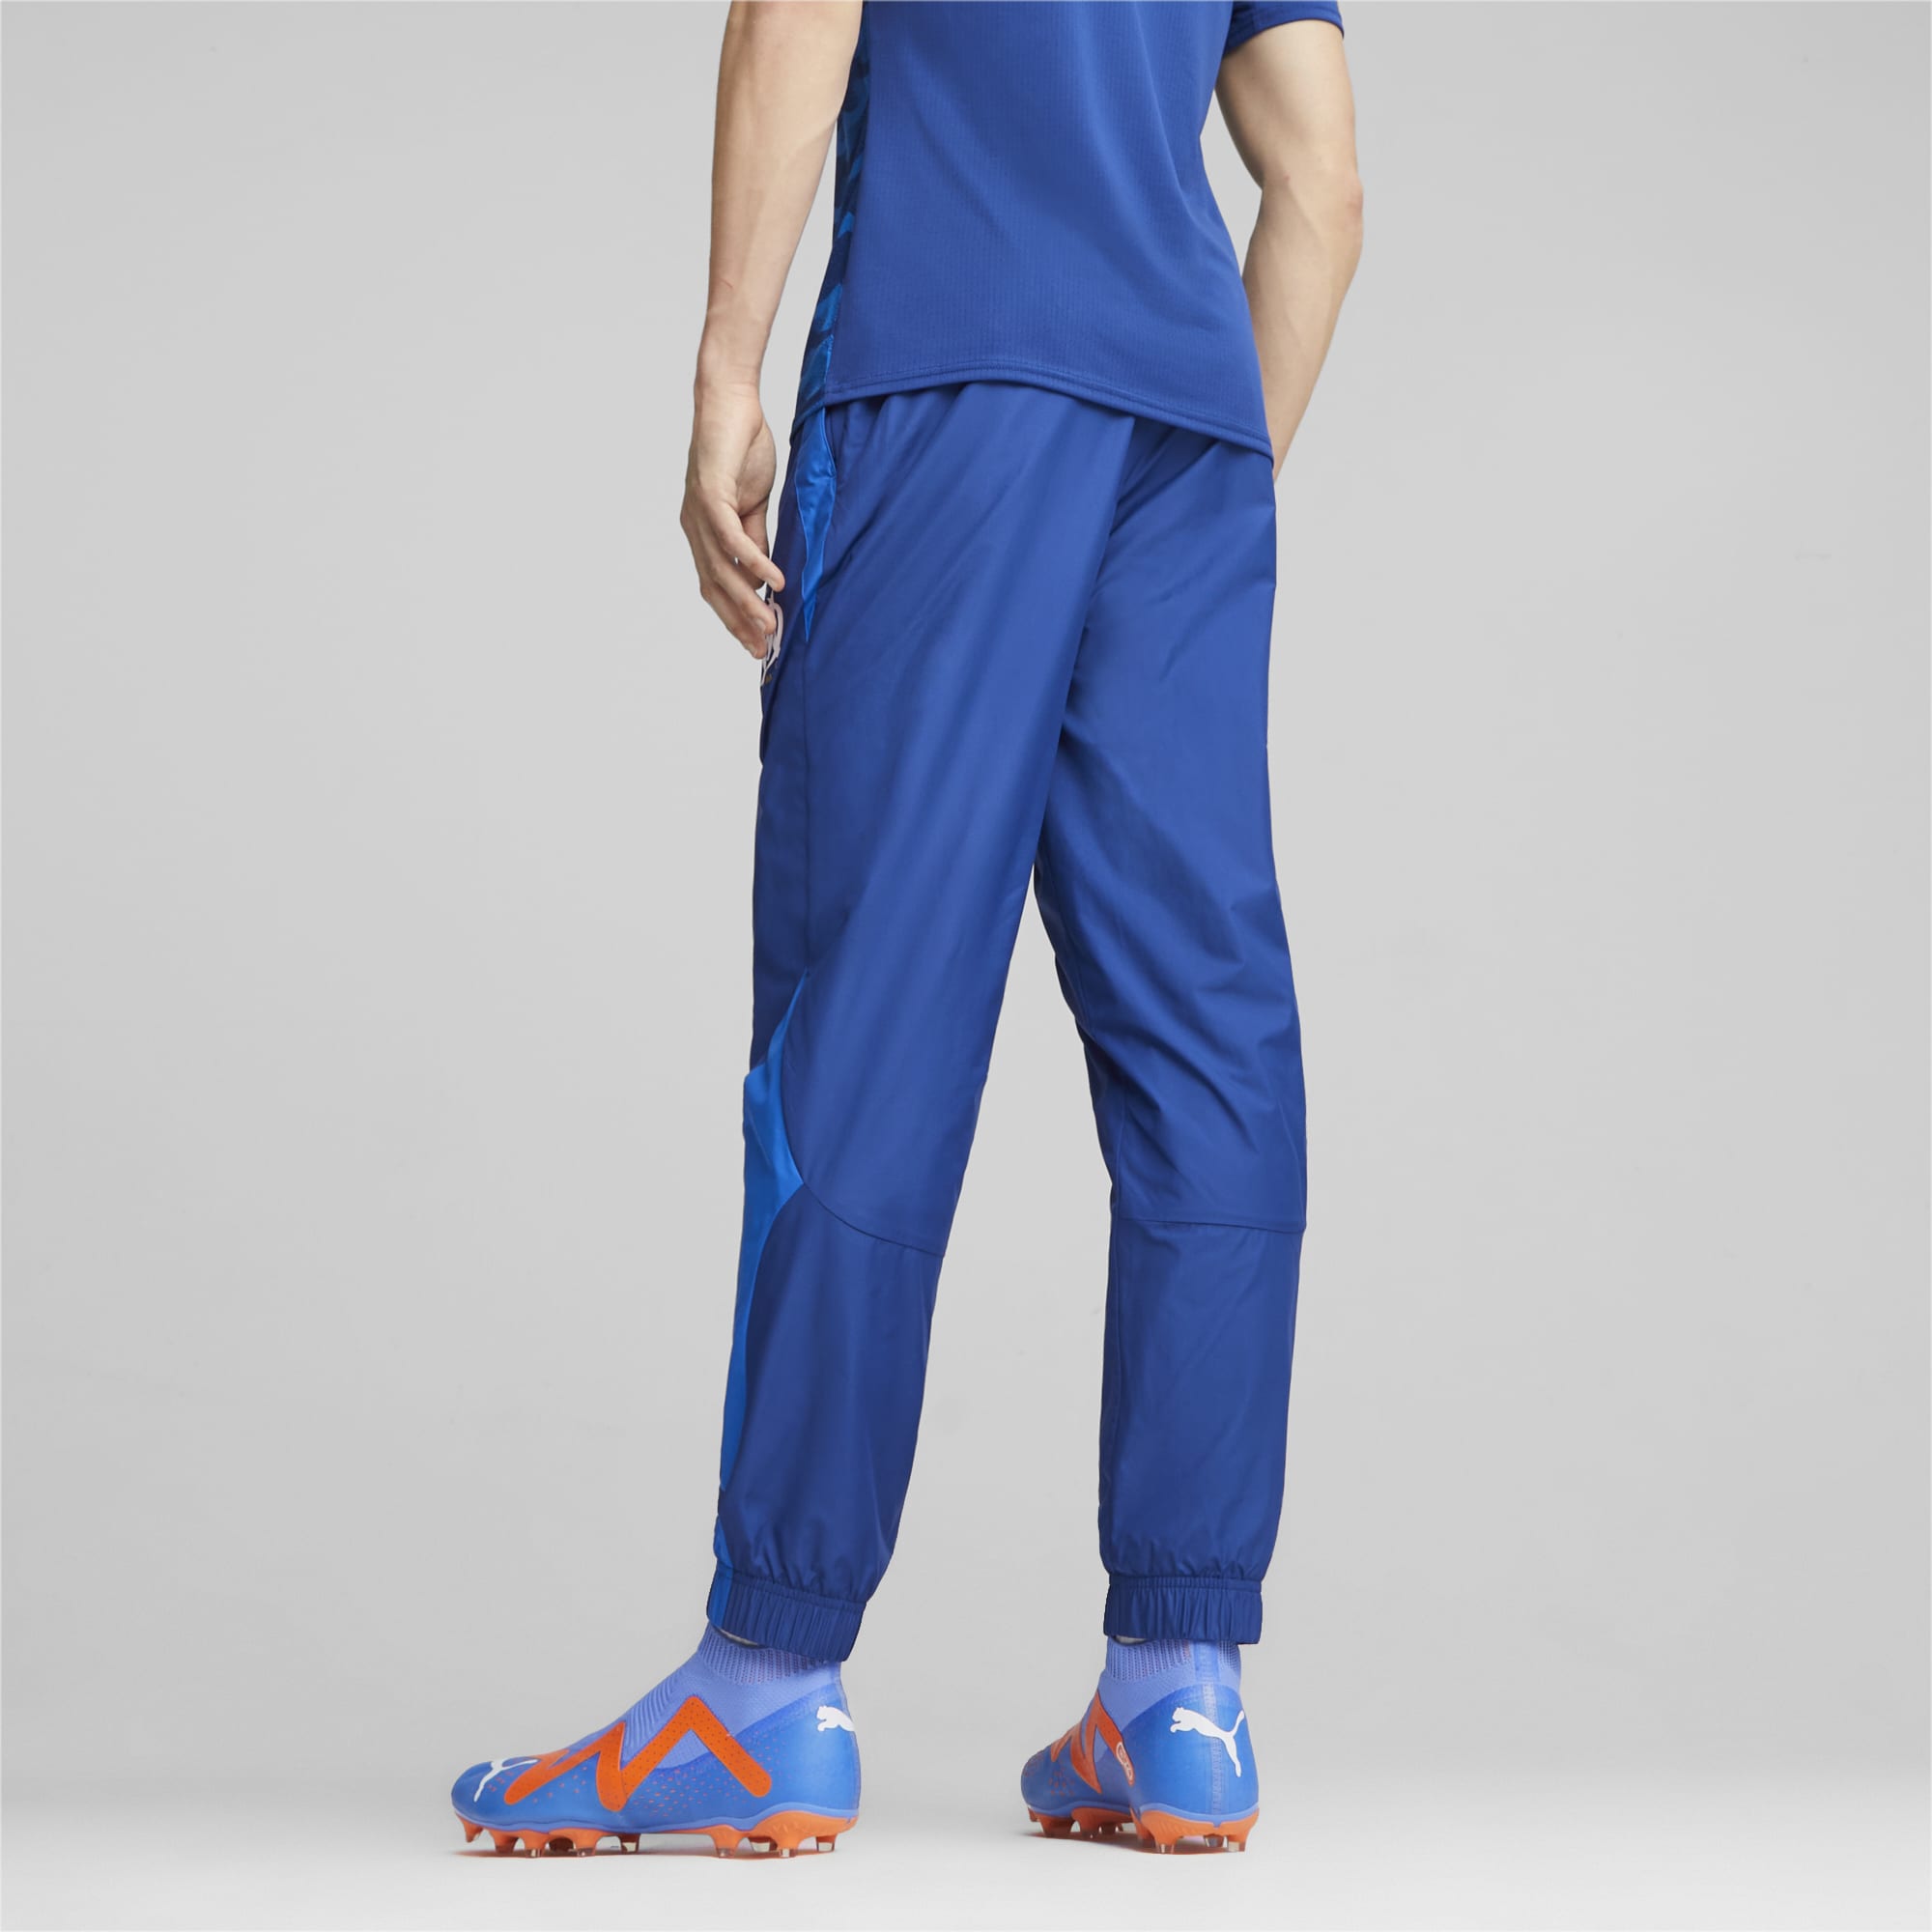 Men's PUMA Olympique De Marseille Prematch Football Pants, Royal Blue, Size XXL, Clothing